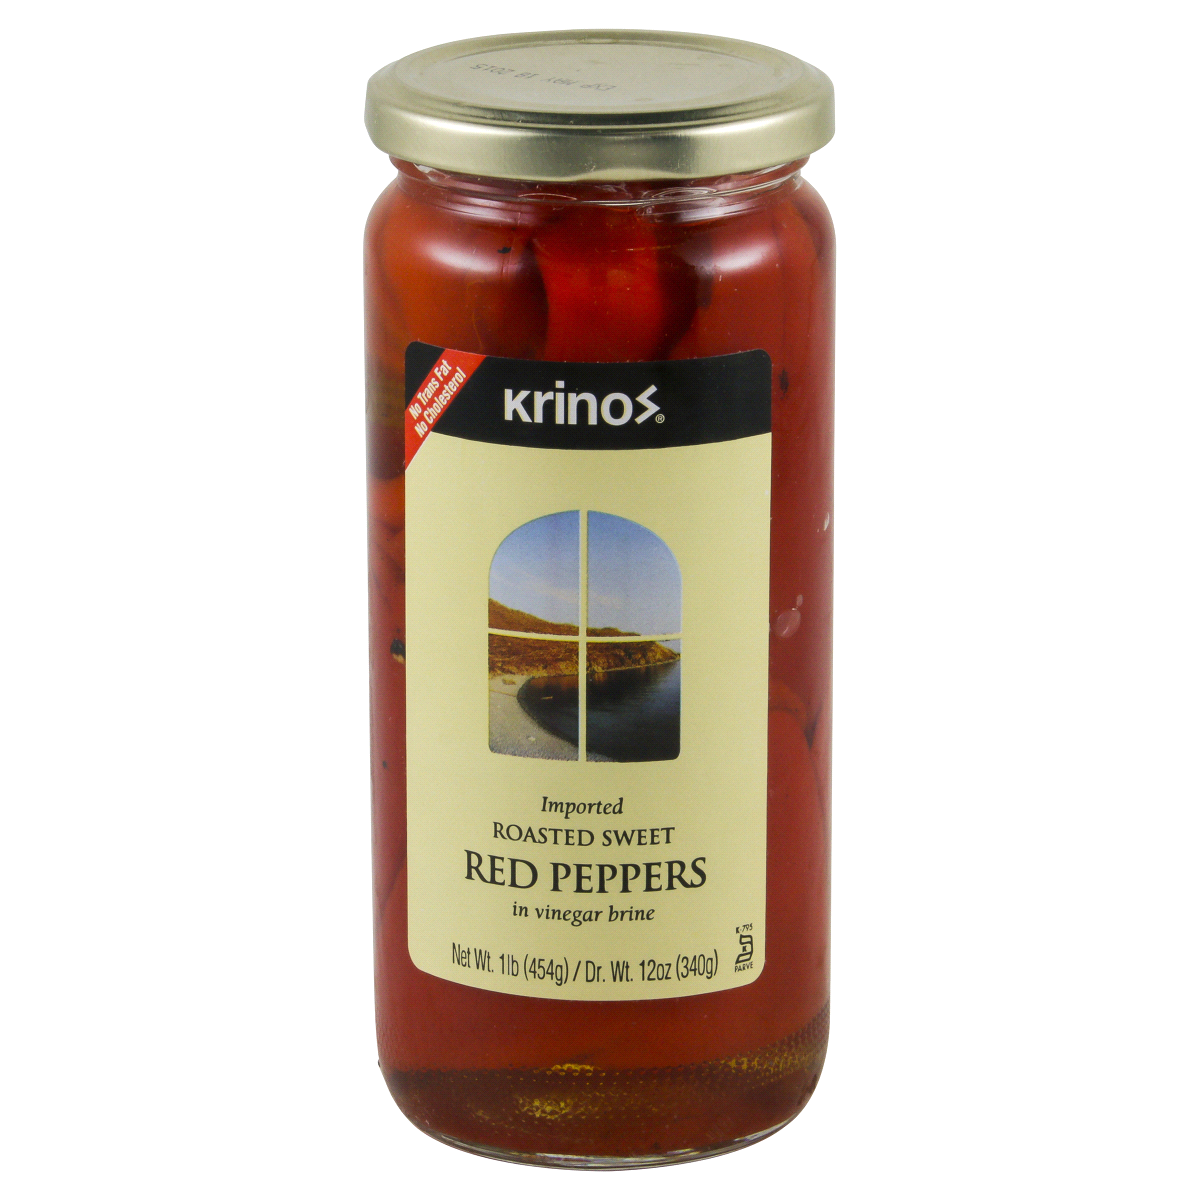 slide 1 of 4, Krinos Roasted Red Peppers in Vinegar Brine, 16 oz